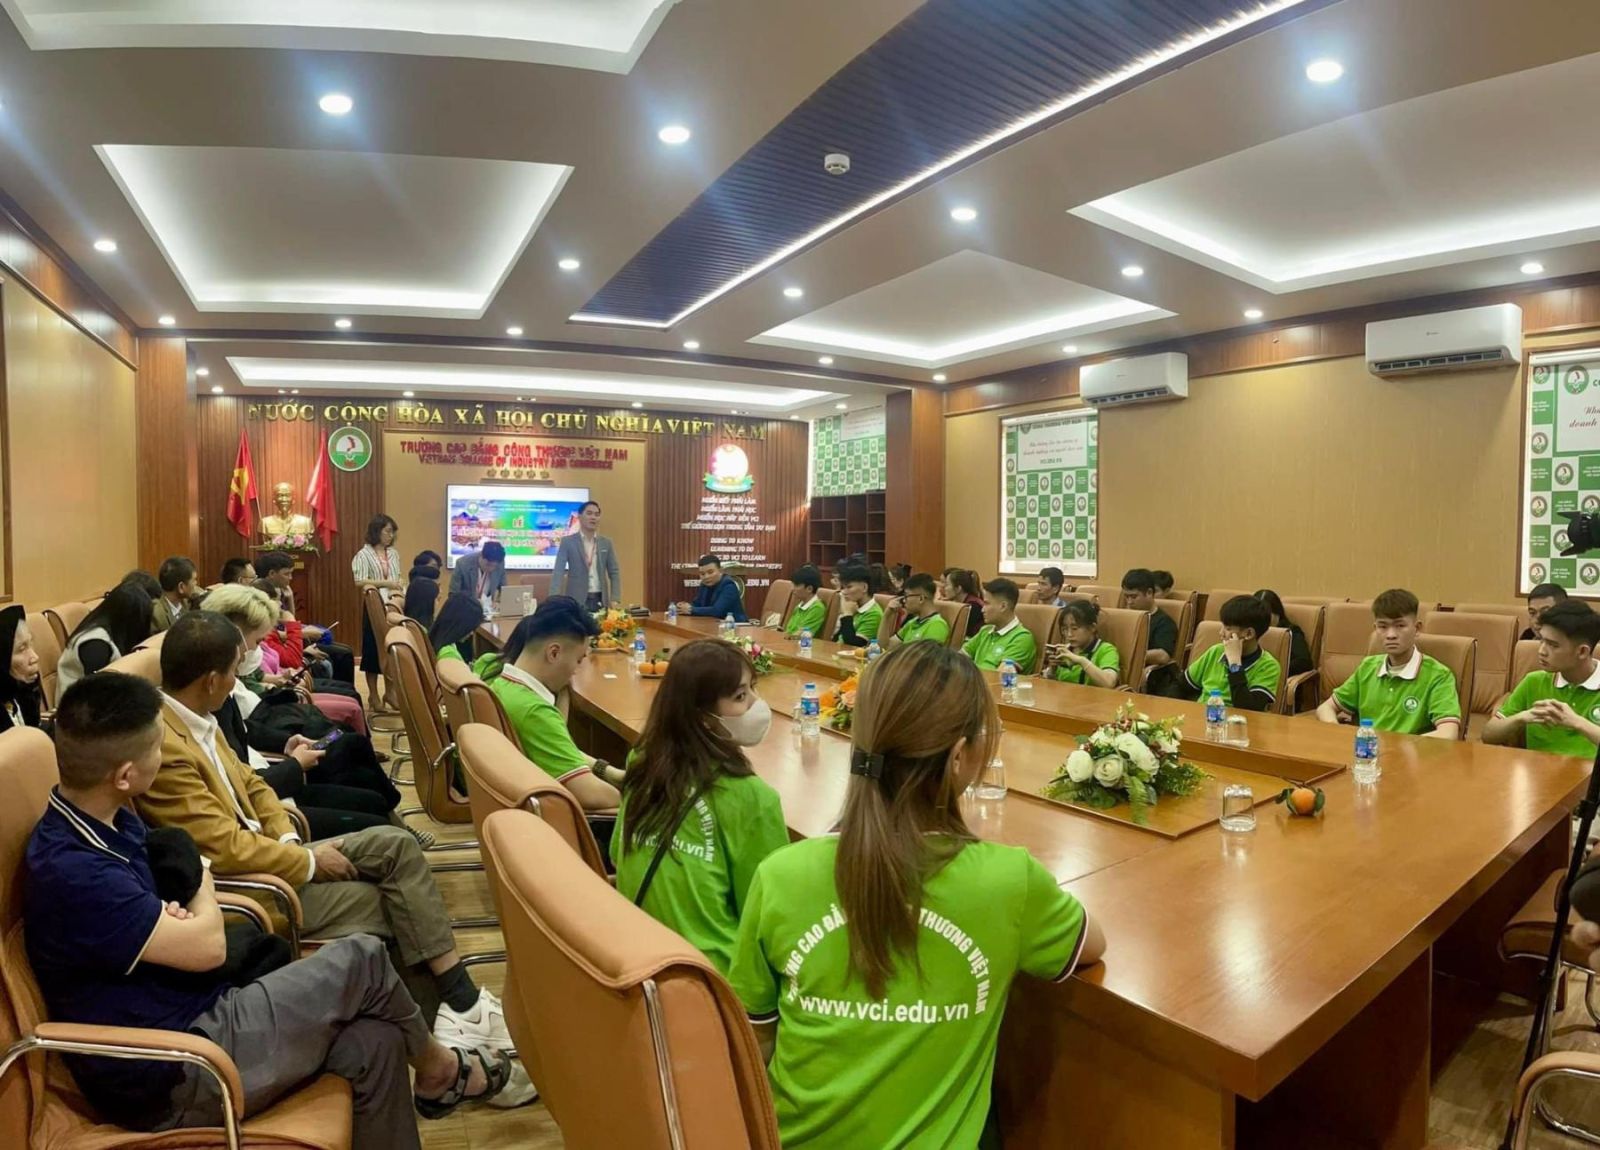 Trường Cao đẳng Công thương Việt Nam tiếp tục tiễn 16 sinh viên sang du học tại Hàn Quốc